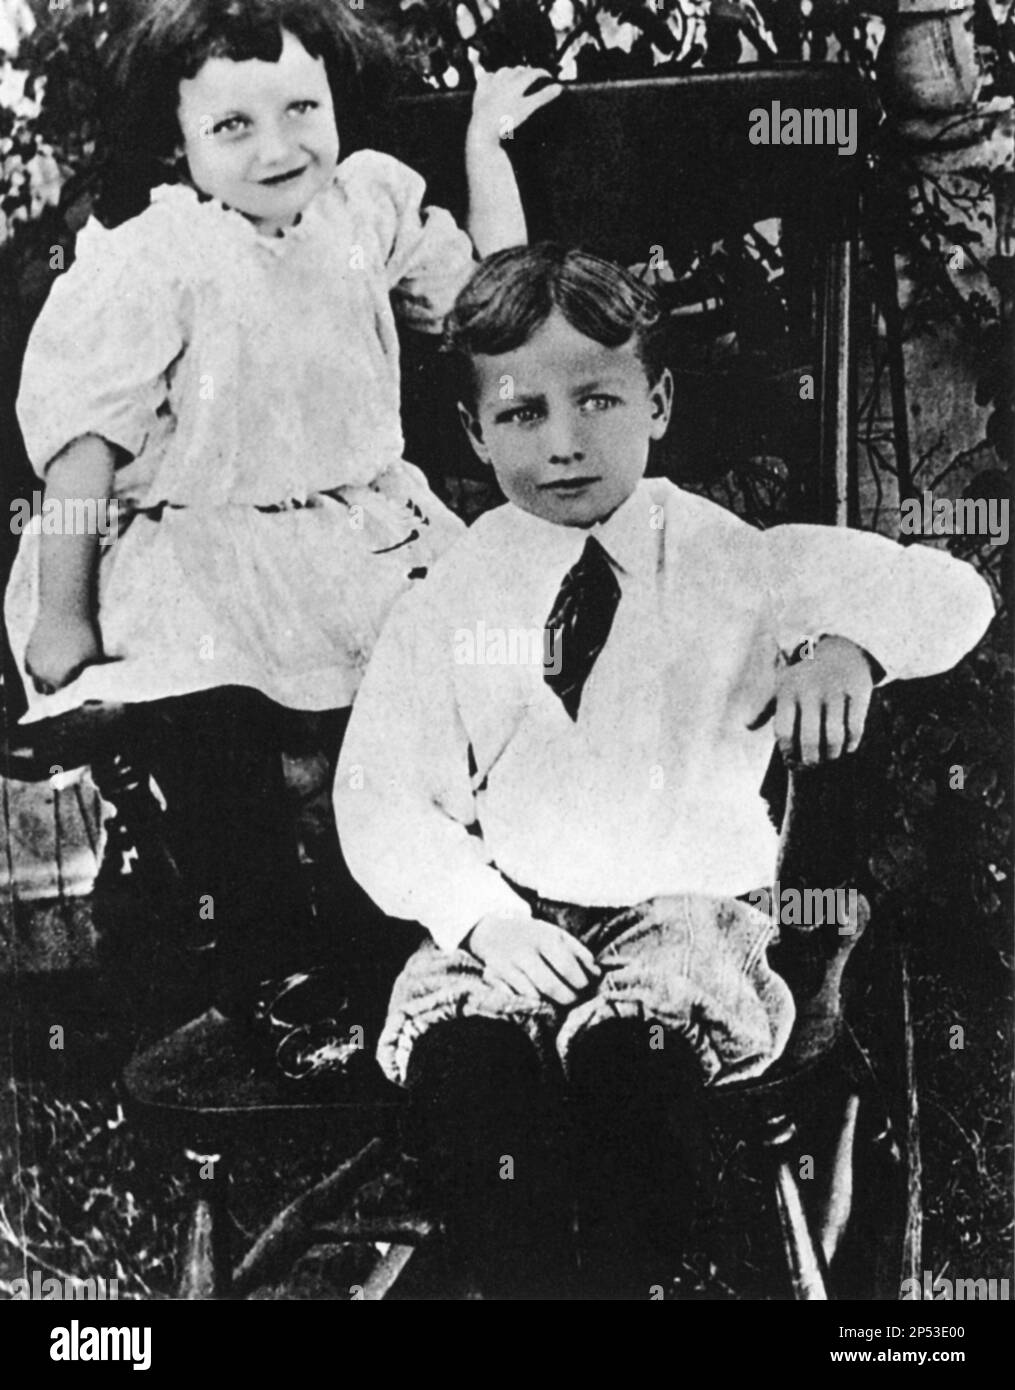 La future superstar hollywoodienne, l'actrice JOAN CRAWFORD ( 1904 - 1977 ) avec son frère Hal Hays LeSueur ( 1901 - 1963 ) Quand était une petite fille - CINÉMA - FILM - portrait - ritratto - fratelli - fratello - frères - soeur - personalità celebi da bambini - bambino - da piccoli - piccolo - da giovane giovani - célébrités personnalités personnalité quand était petit enfant - enfants - enfants - Bébé - bébés jeunes ---- Archivio GBB Banque D'Images